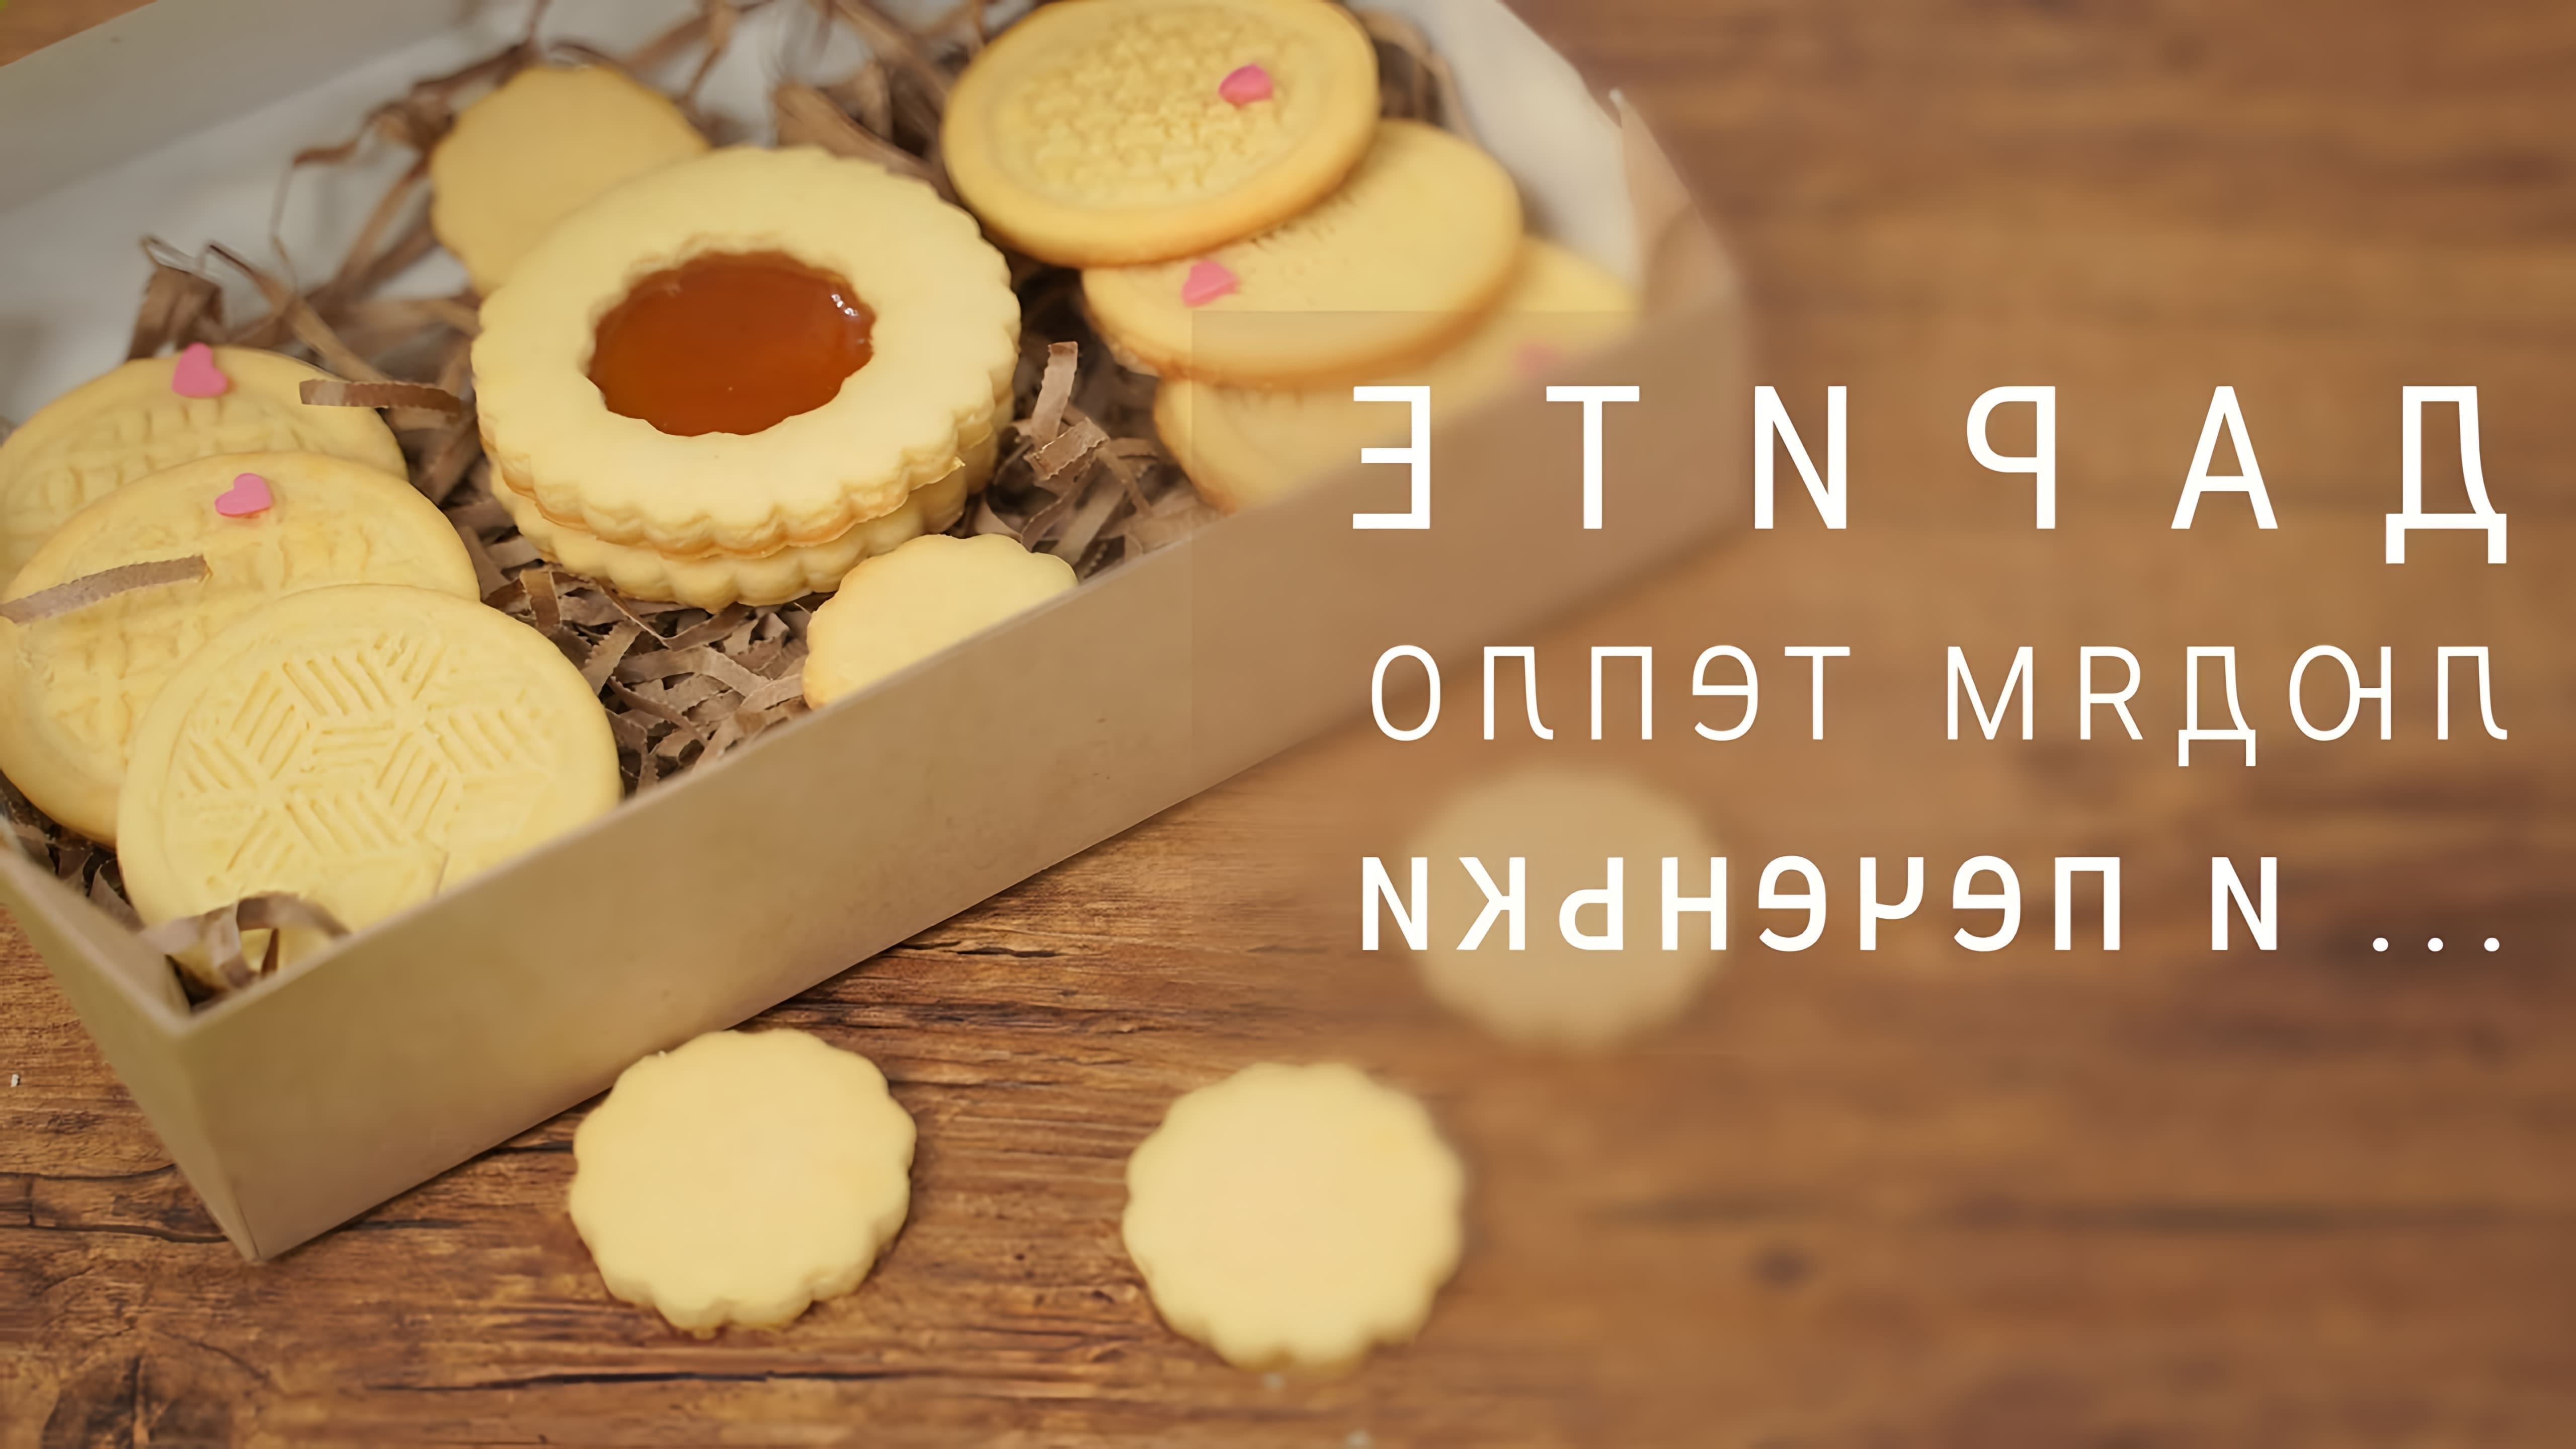 В этом видео демонстрируется рецепт миндального печенья с джемом